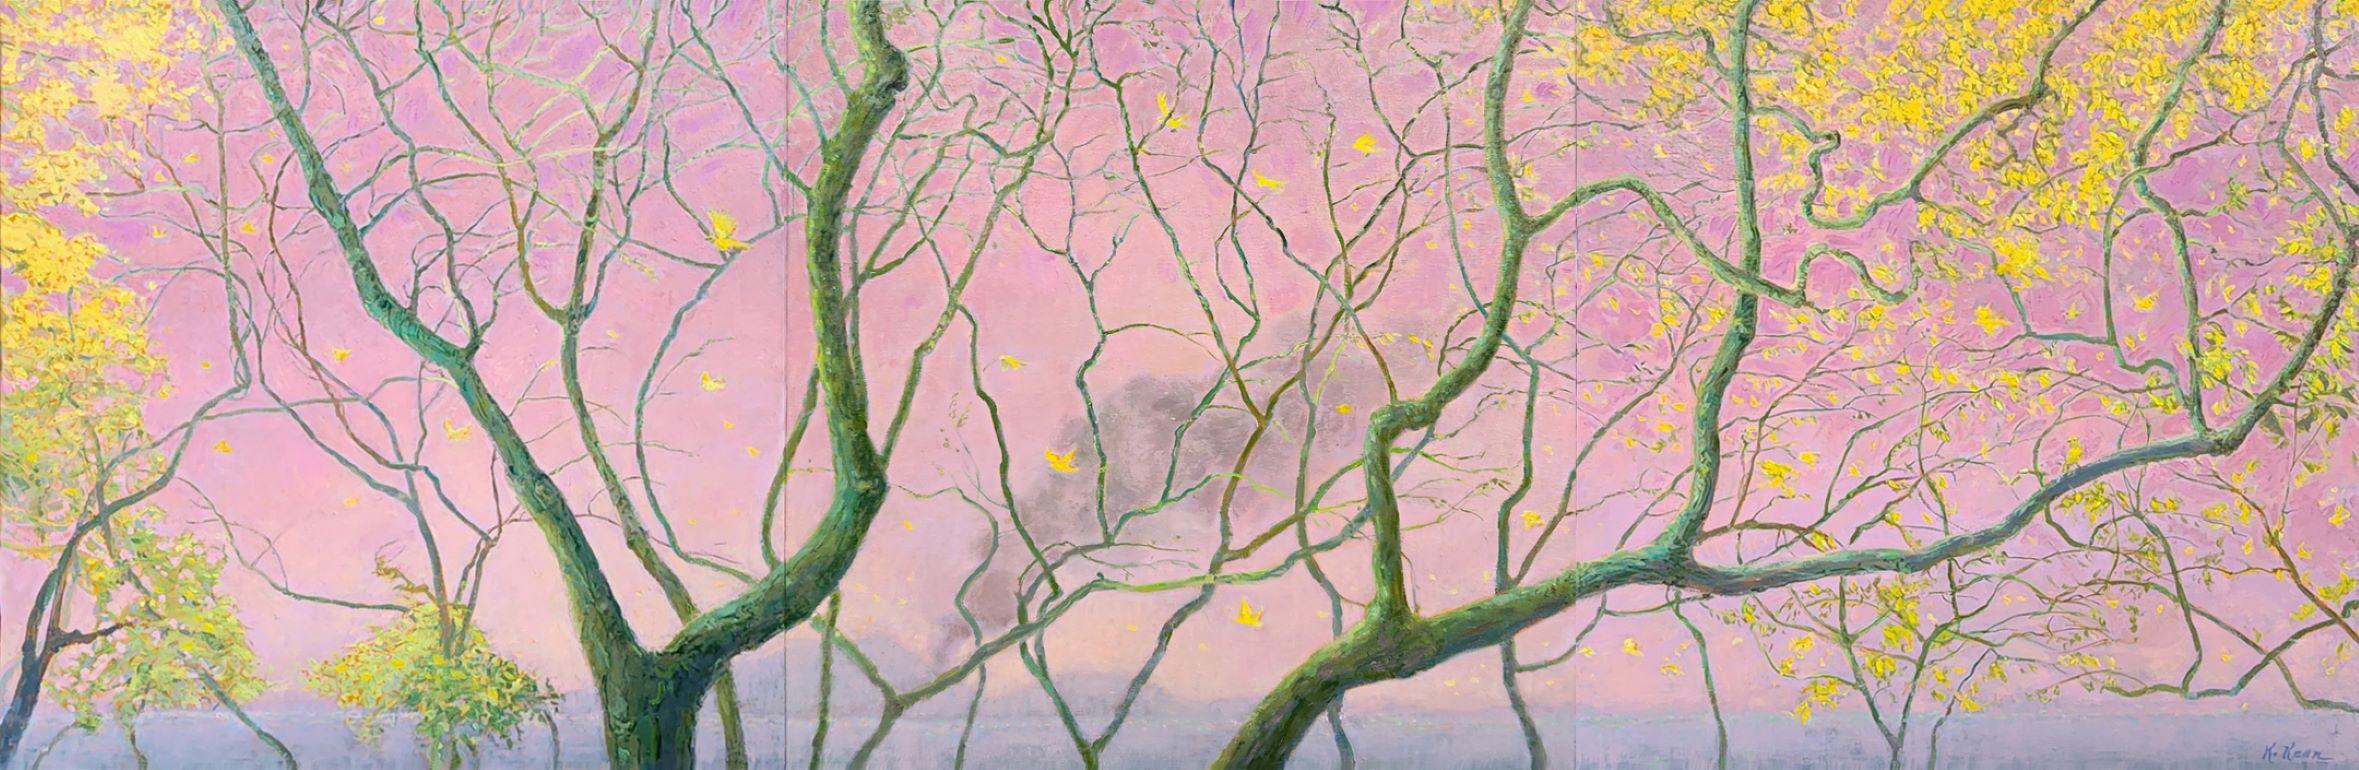 Là où les oiseaux jaunes volent dans les cieux roses triptyque paysage contemporain - Painting de Katherine Kean